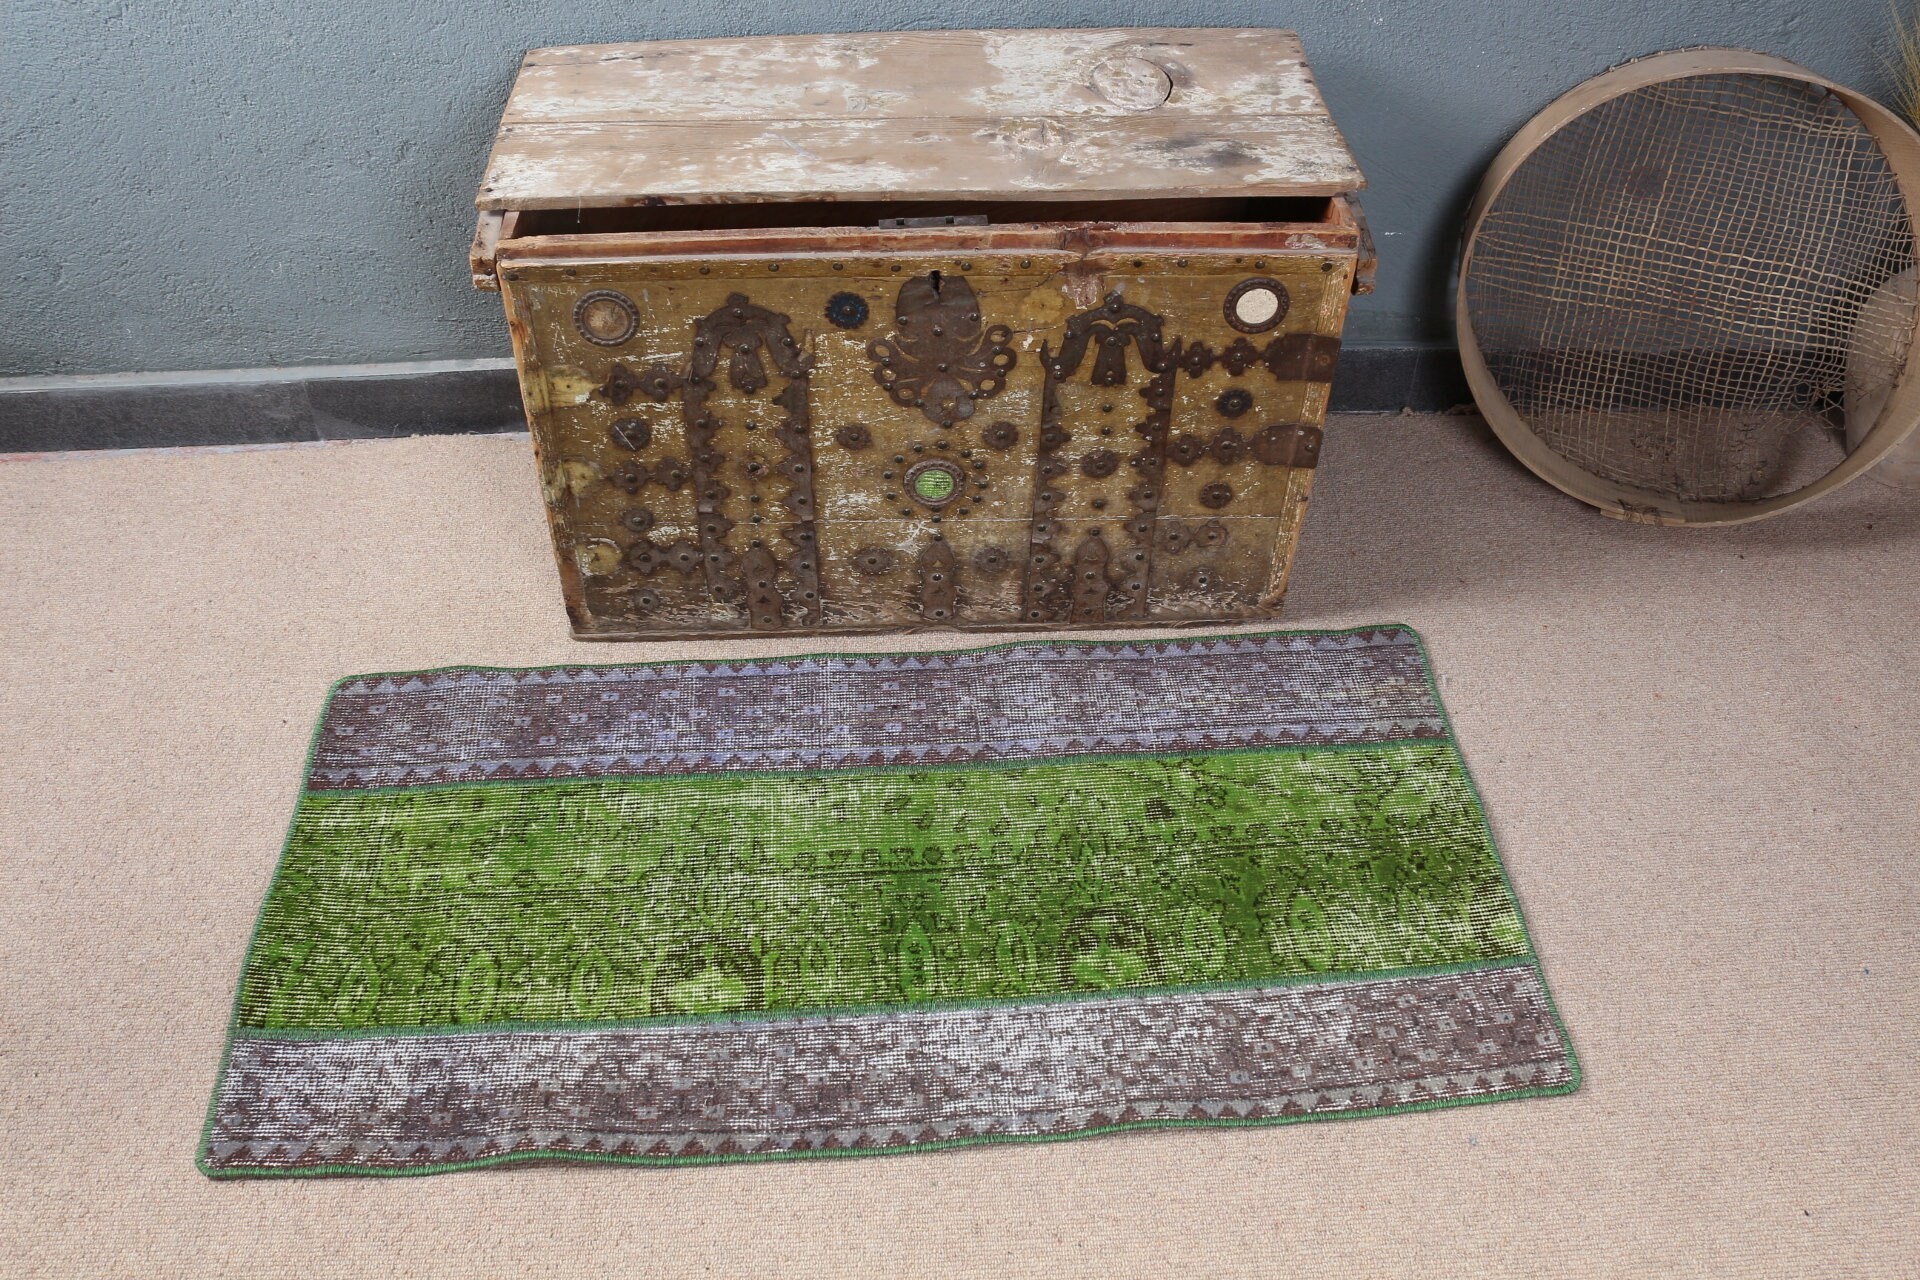 Moroccan Rug, Bathroom Rug, Rugs for Car Mat, Door Mat Rug, Green Cool Rug, Oriental Rug, Vintage Rug, 2x4 ft Small Rug, Turkish Rug